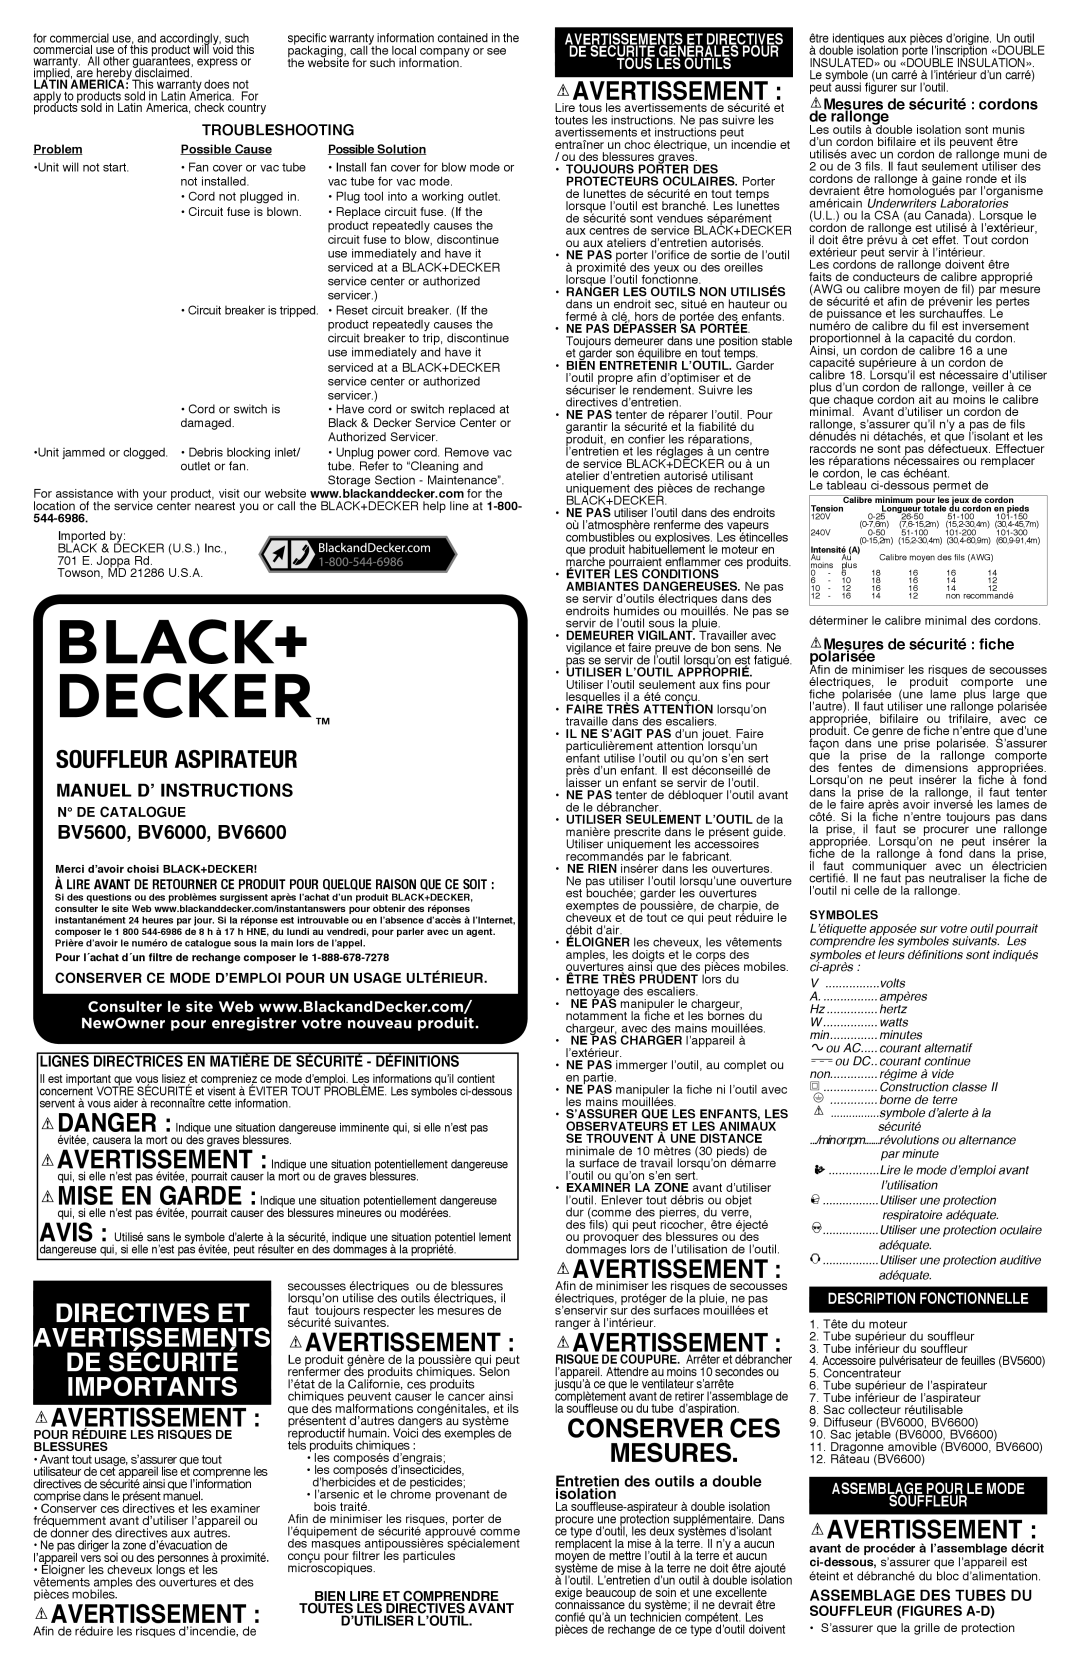 Black & Decker BV5600 Directives Et Avertissements De Sécurité Importants, Conserver Ces Mesures, souffleur Aspirateur 